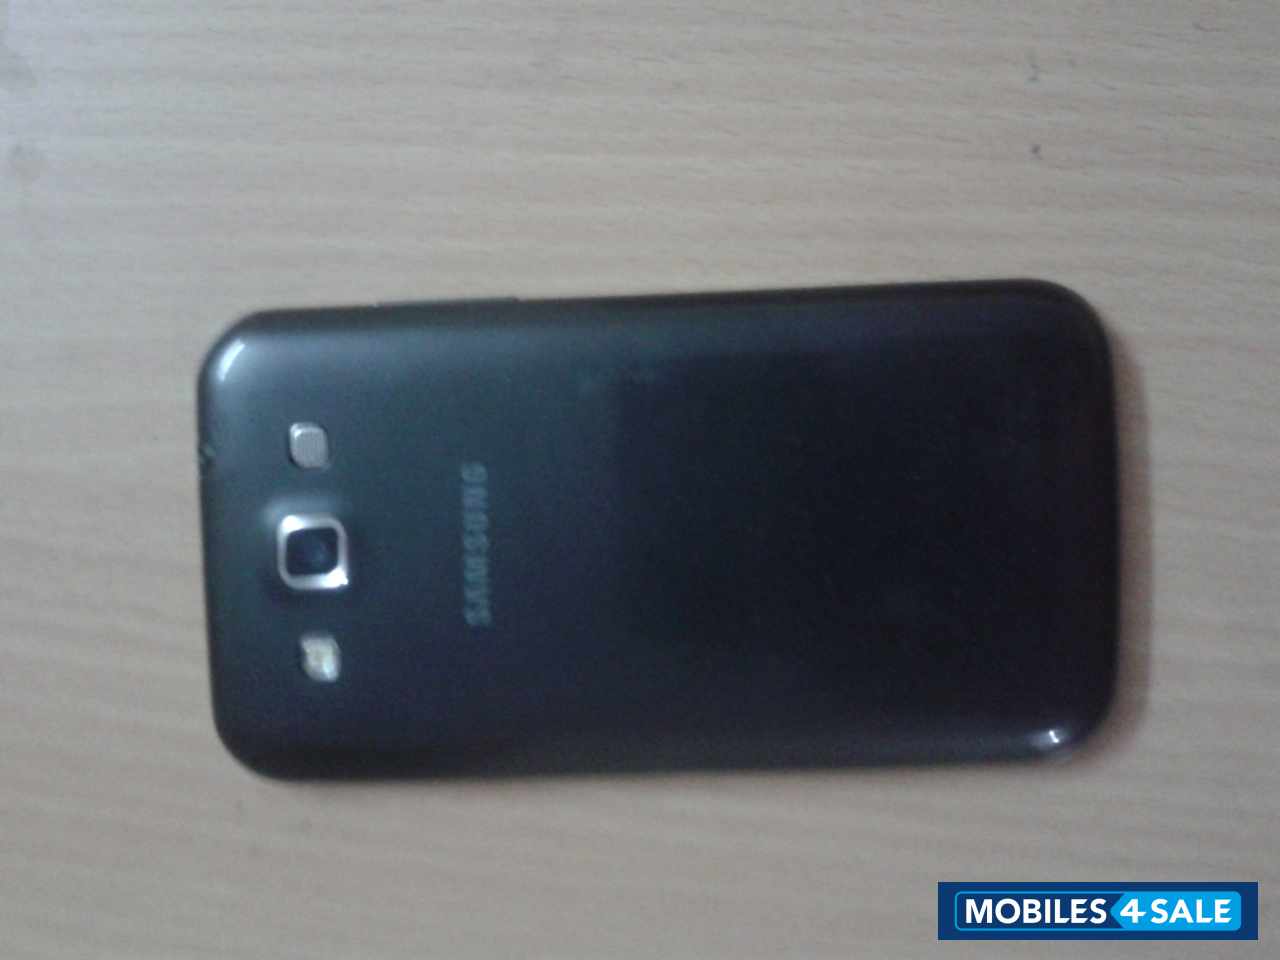 Black And Grey Samsung Galaxy Grand Quarttro